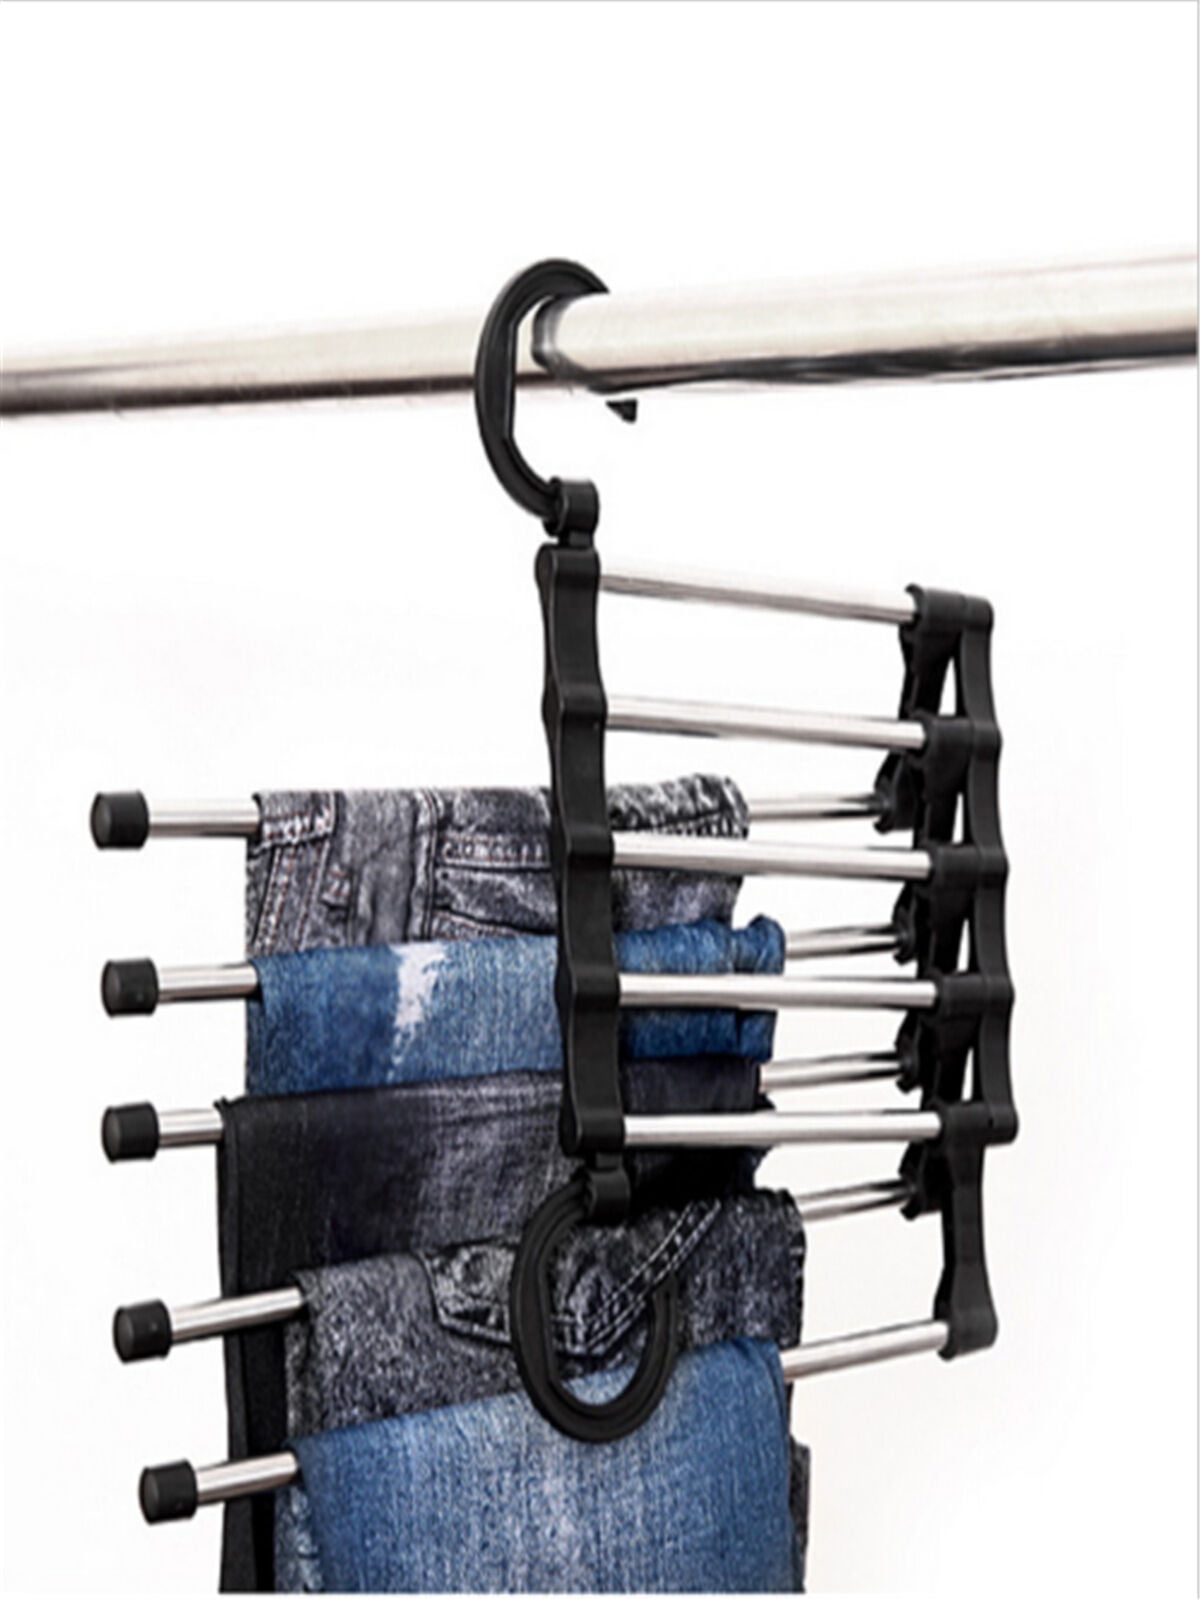 Pants rack shelves 5 in 1 Stainless Steel Multi-functional Wardrobe Magic Hanger